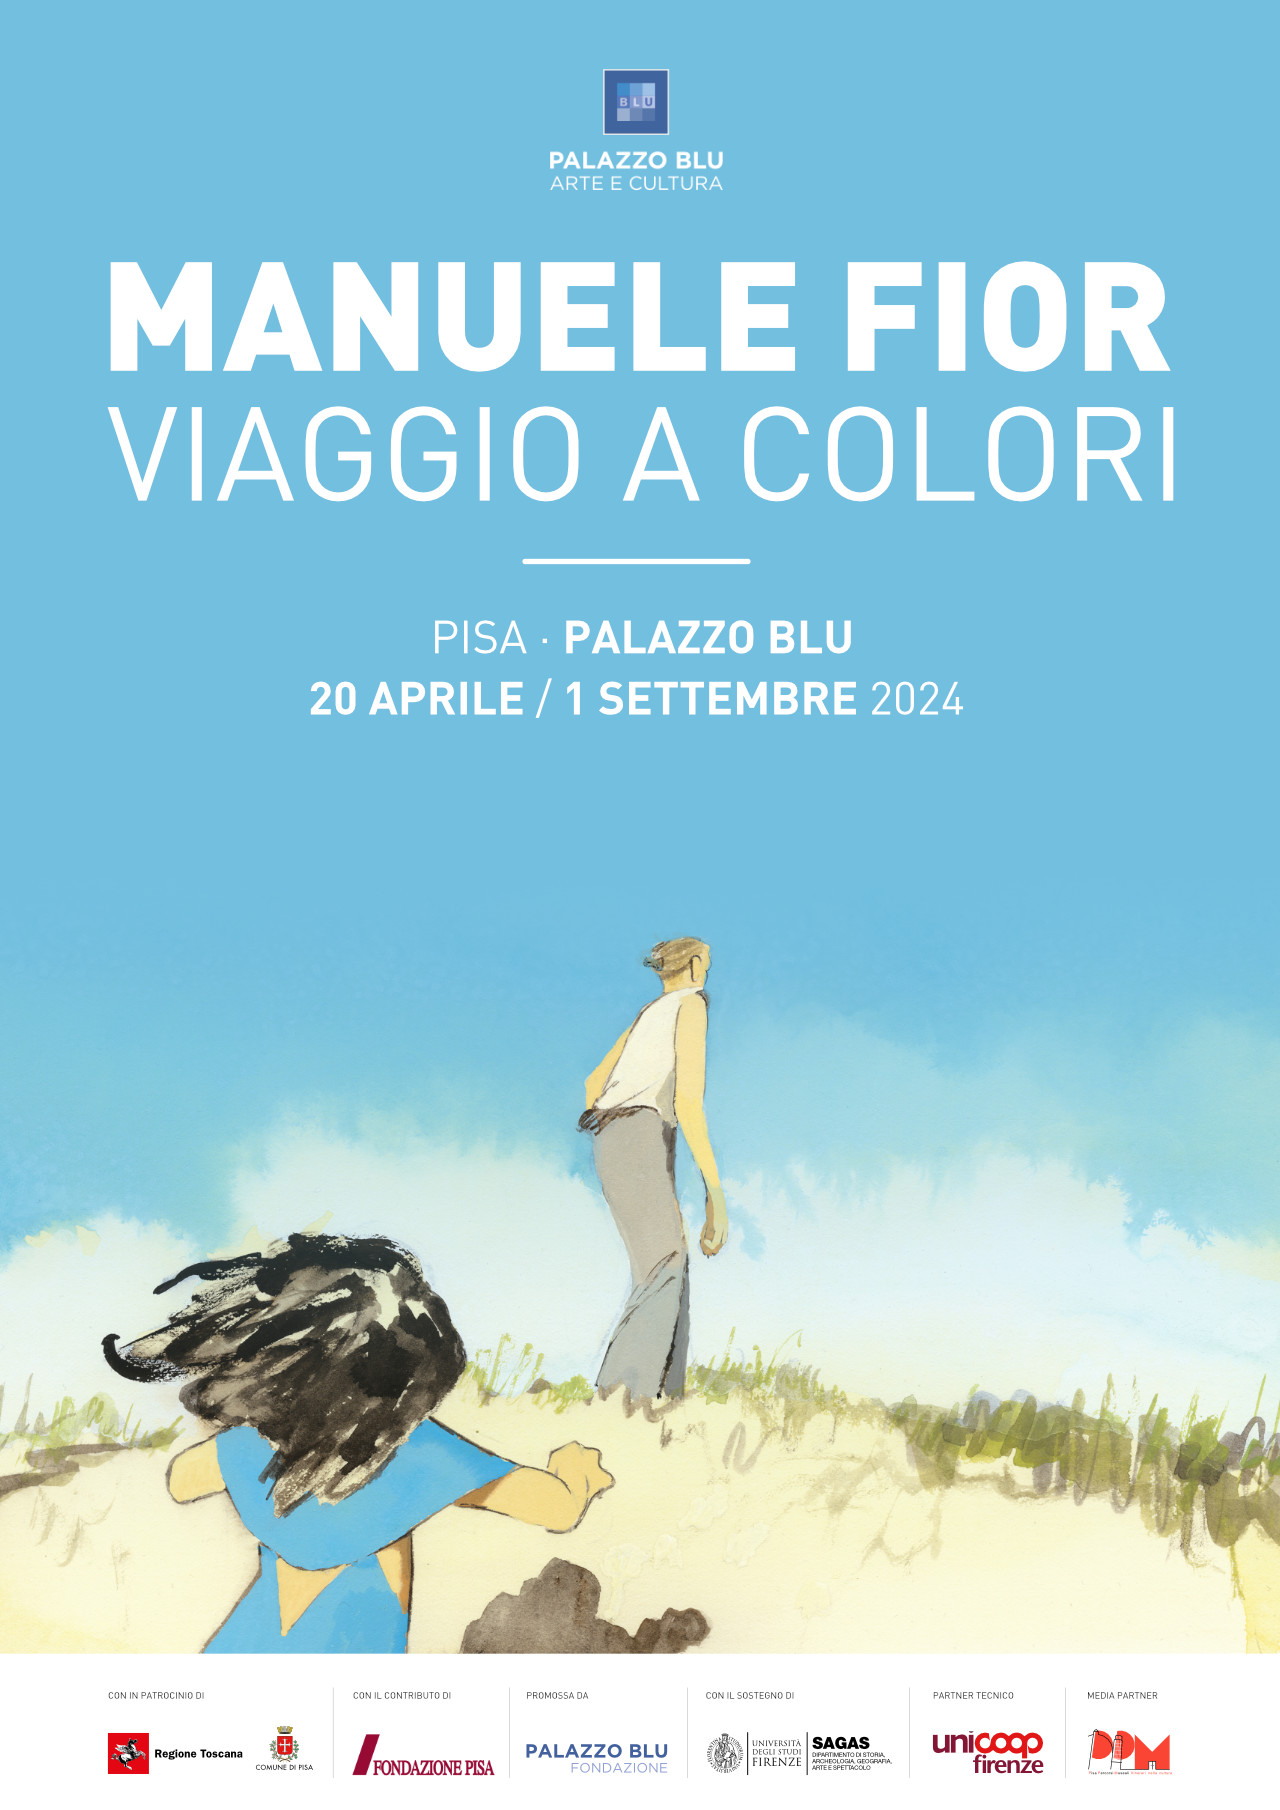 Manuele Fior. Viaggio a colori
Pisa, Palazzo Blu, 19 aprile 2024 – 1° settembre 2024